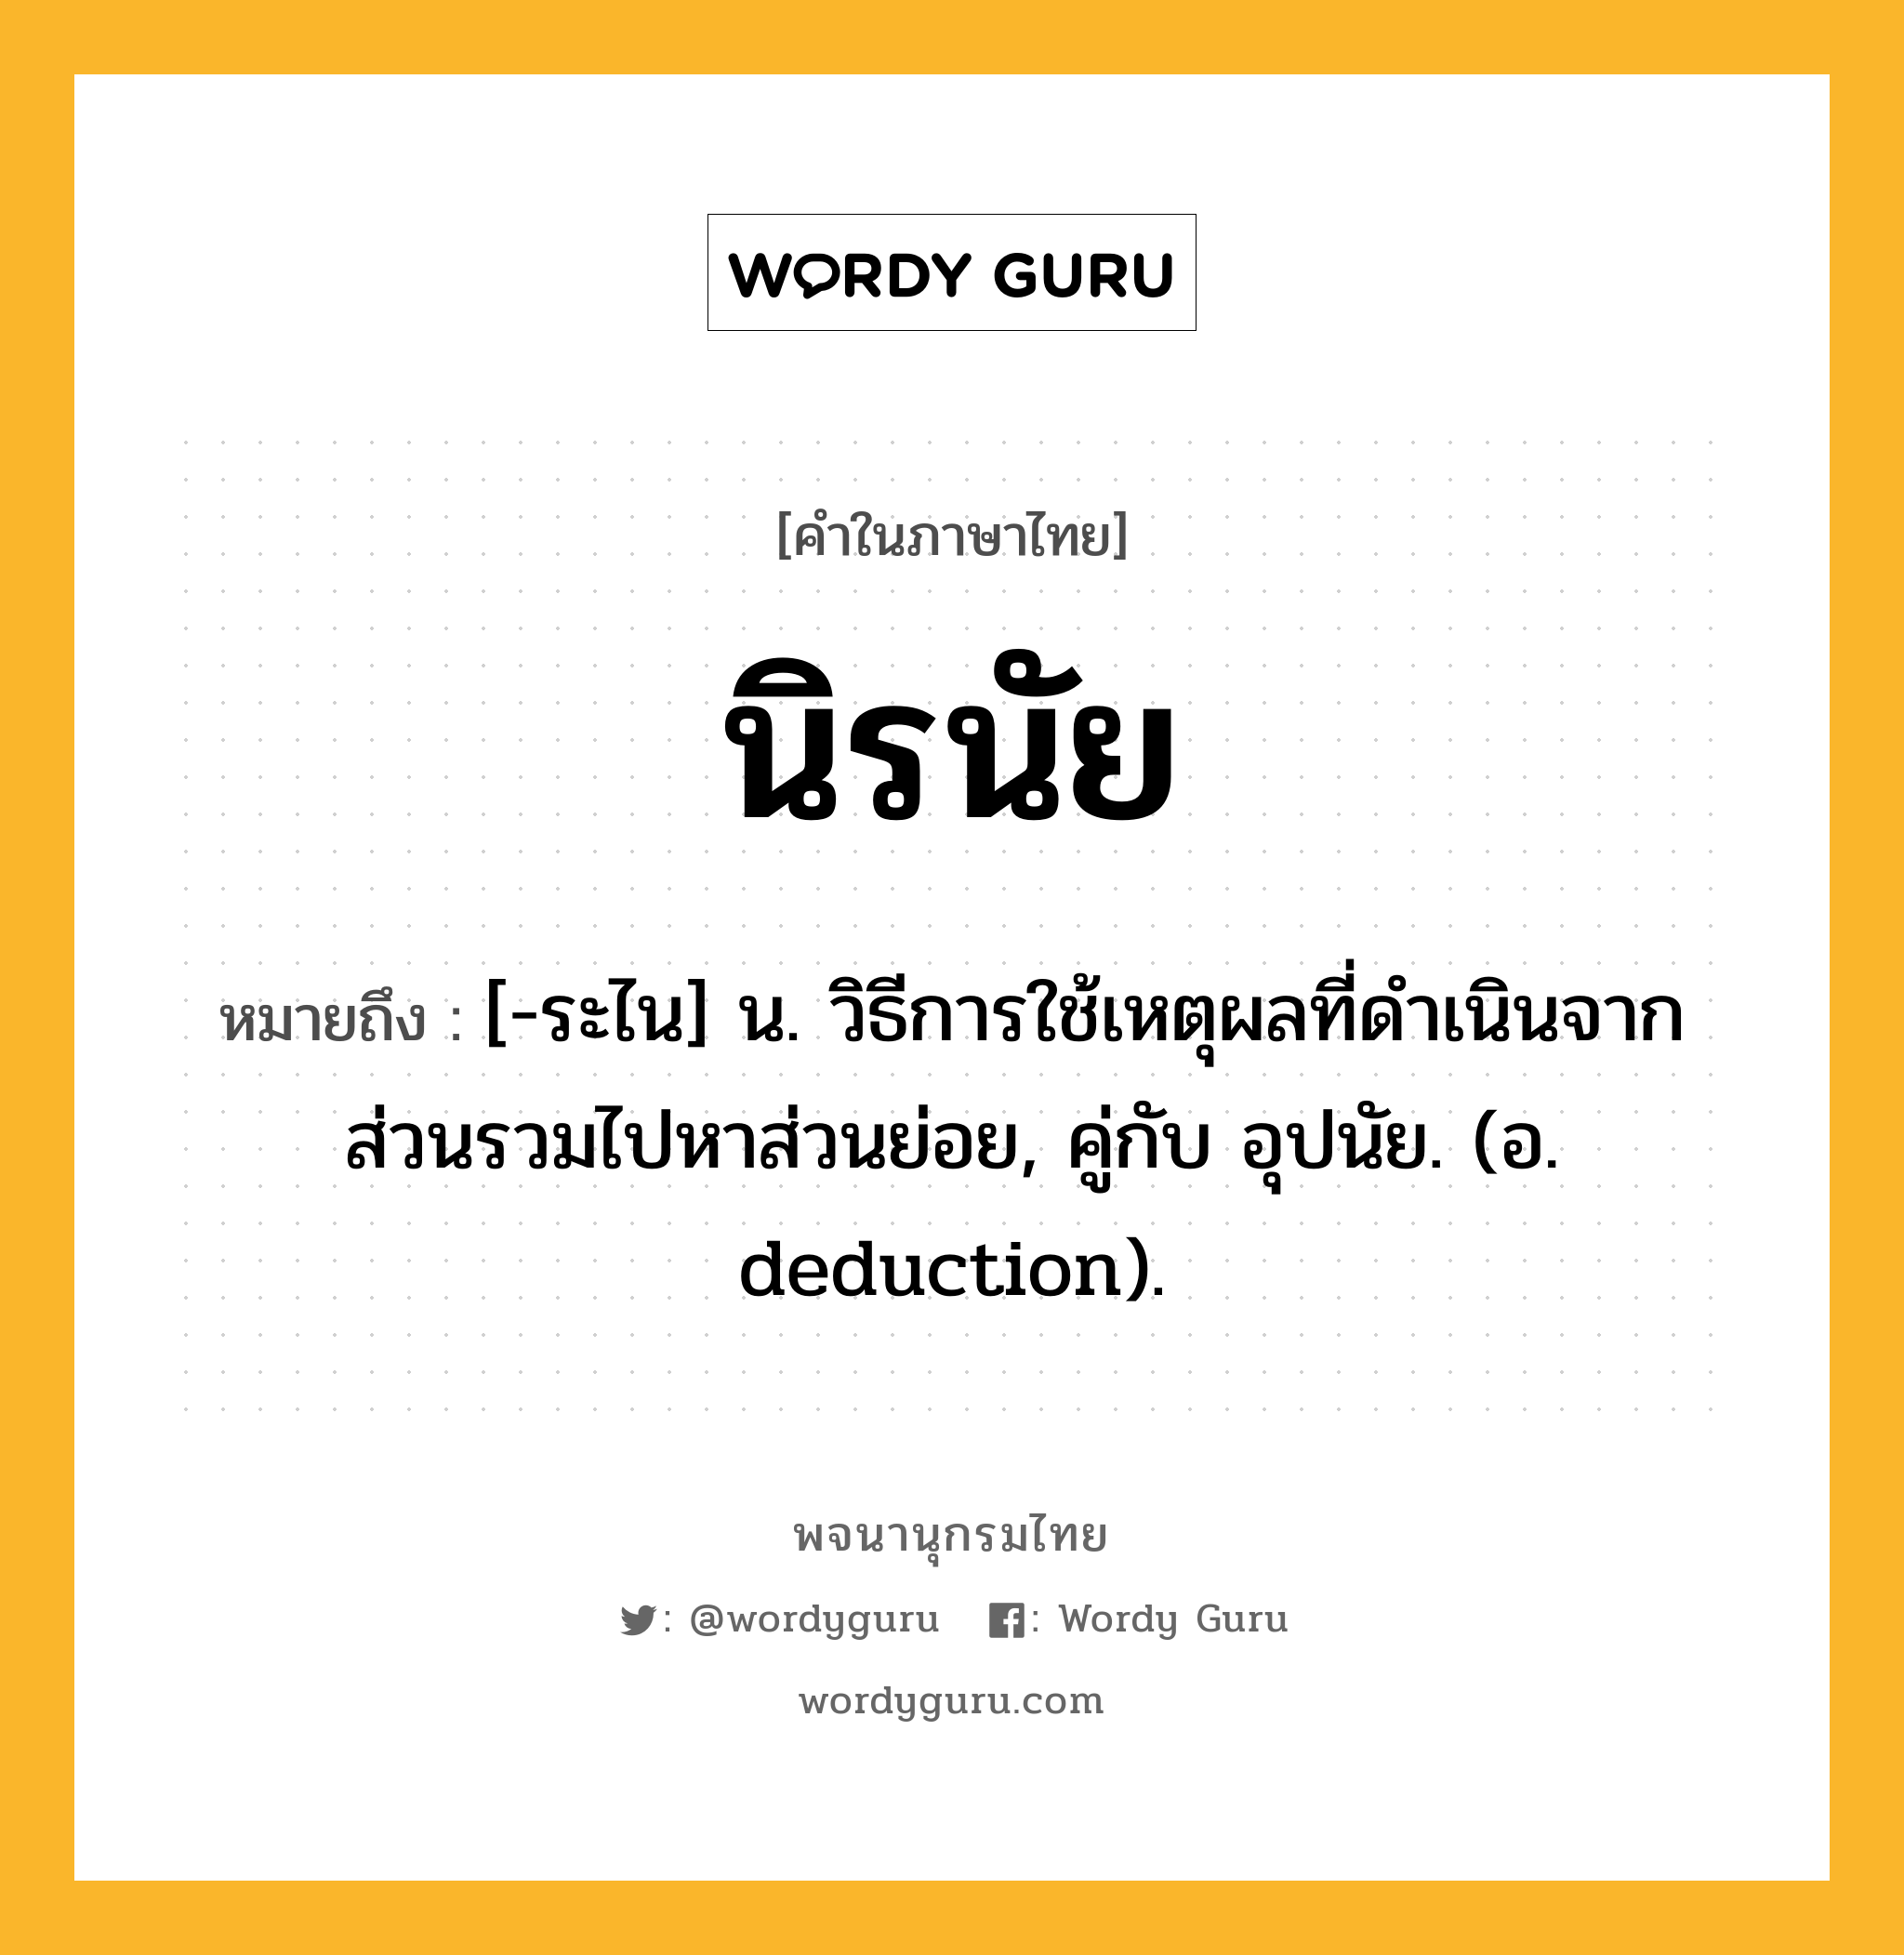 นิรนัย หมายถึงอะไร?, คำในภาษาไทย นิรนัย หมายถึง [-ระไน] น. วิธีการใช้เหตุผลที่ดําเนินจากส่วนรวมไปหาส่วนย่อย, คู่กับ อุปนัย. (อ. deduction).